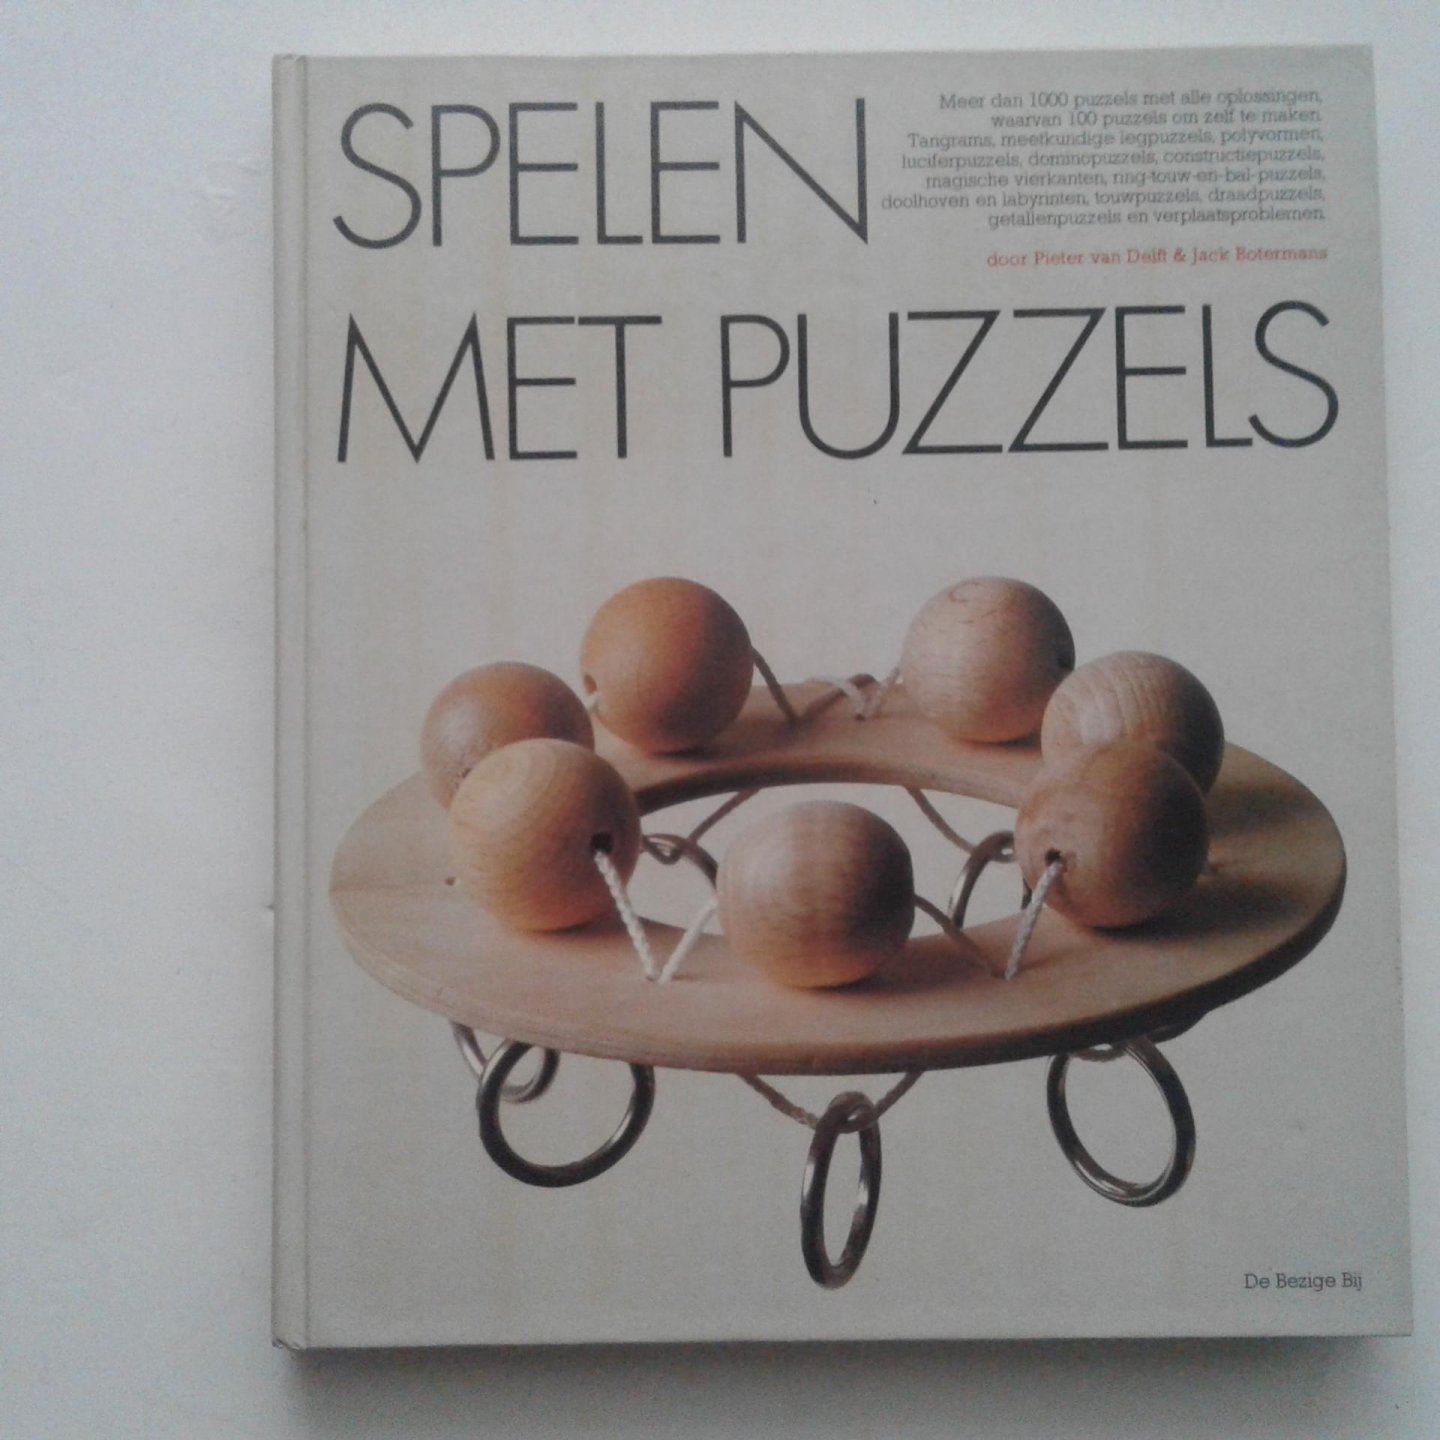 Delft, Pieter van ; Botermans, Jack - Botermans ; Spelen met puzzels